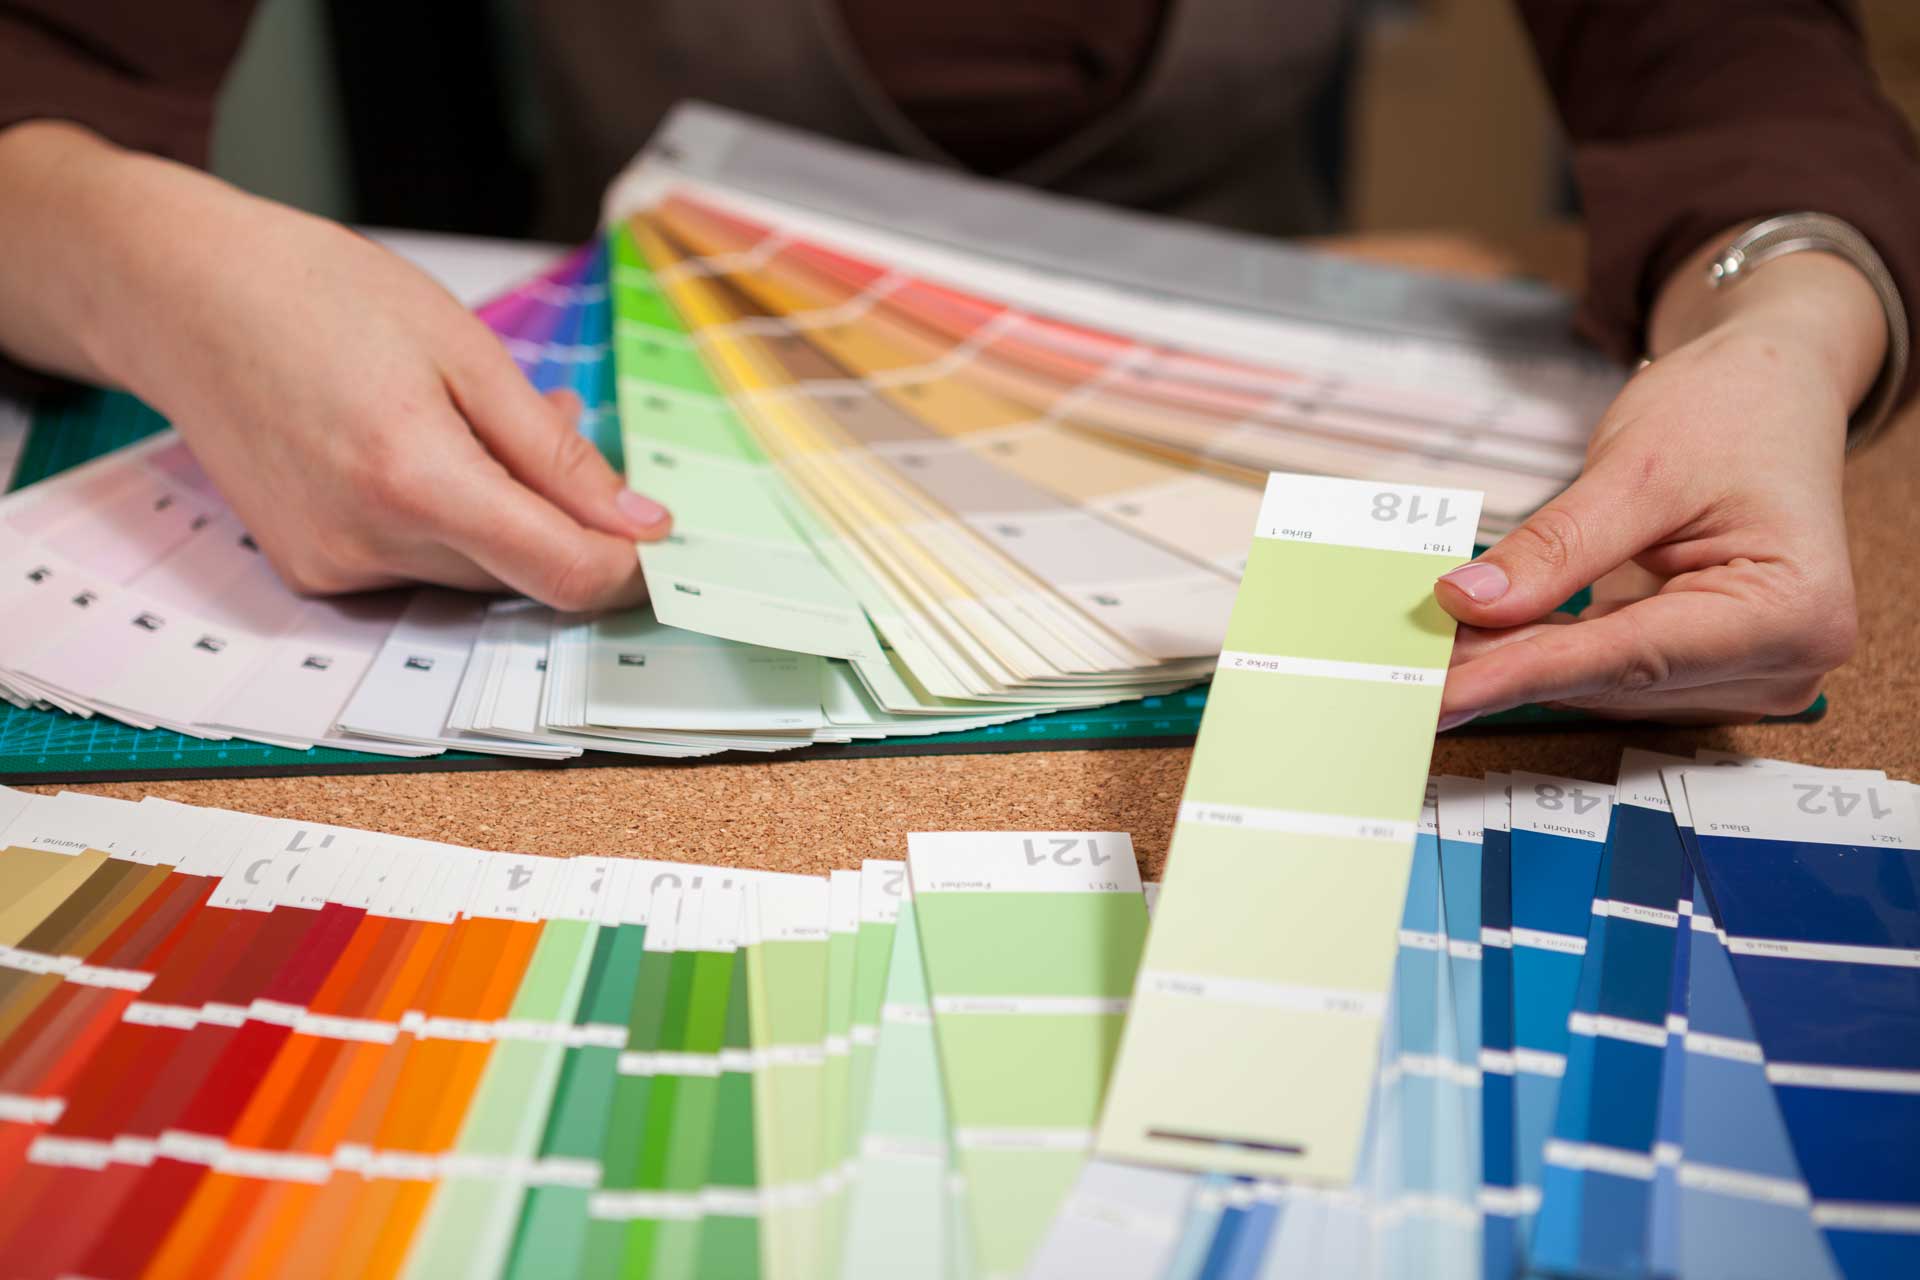 close-up-image-of-color-cards-on-architect-desk-PDTDP7N.jpg